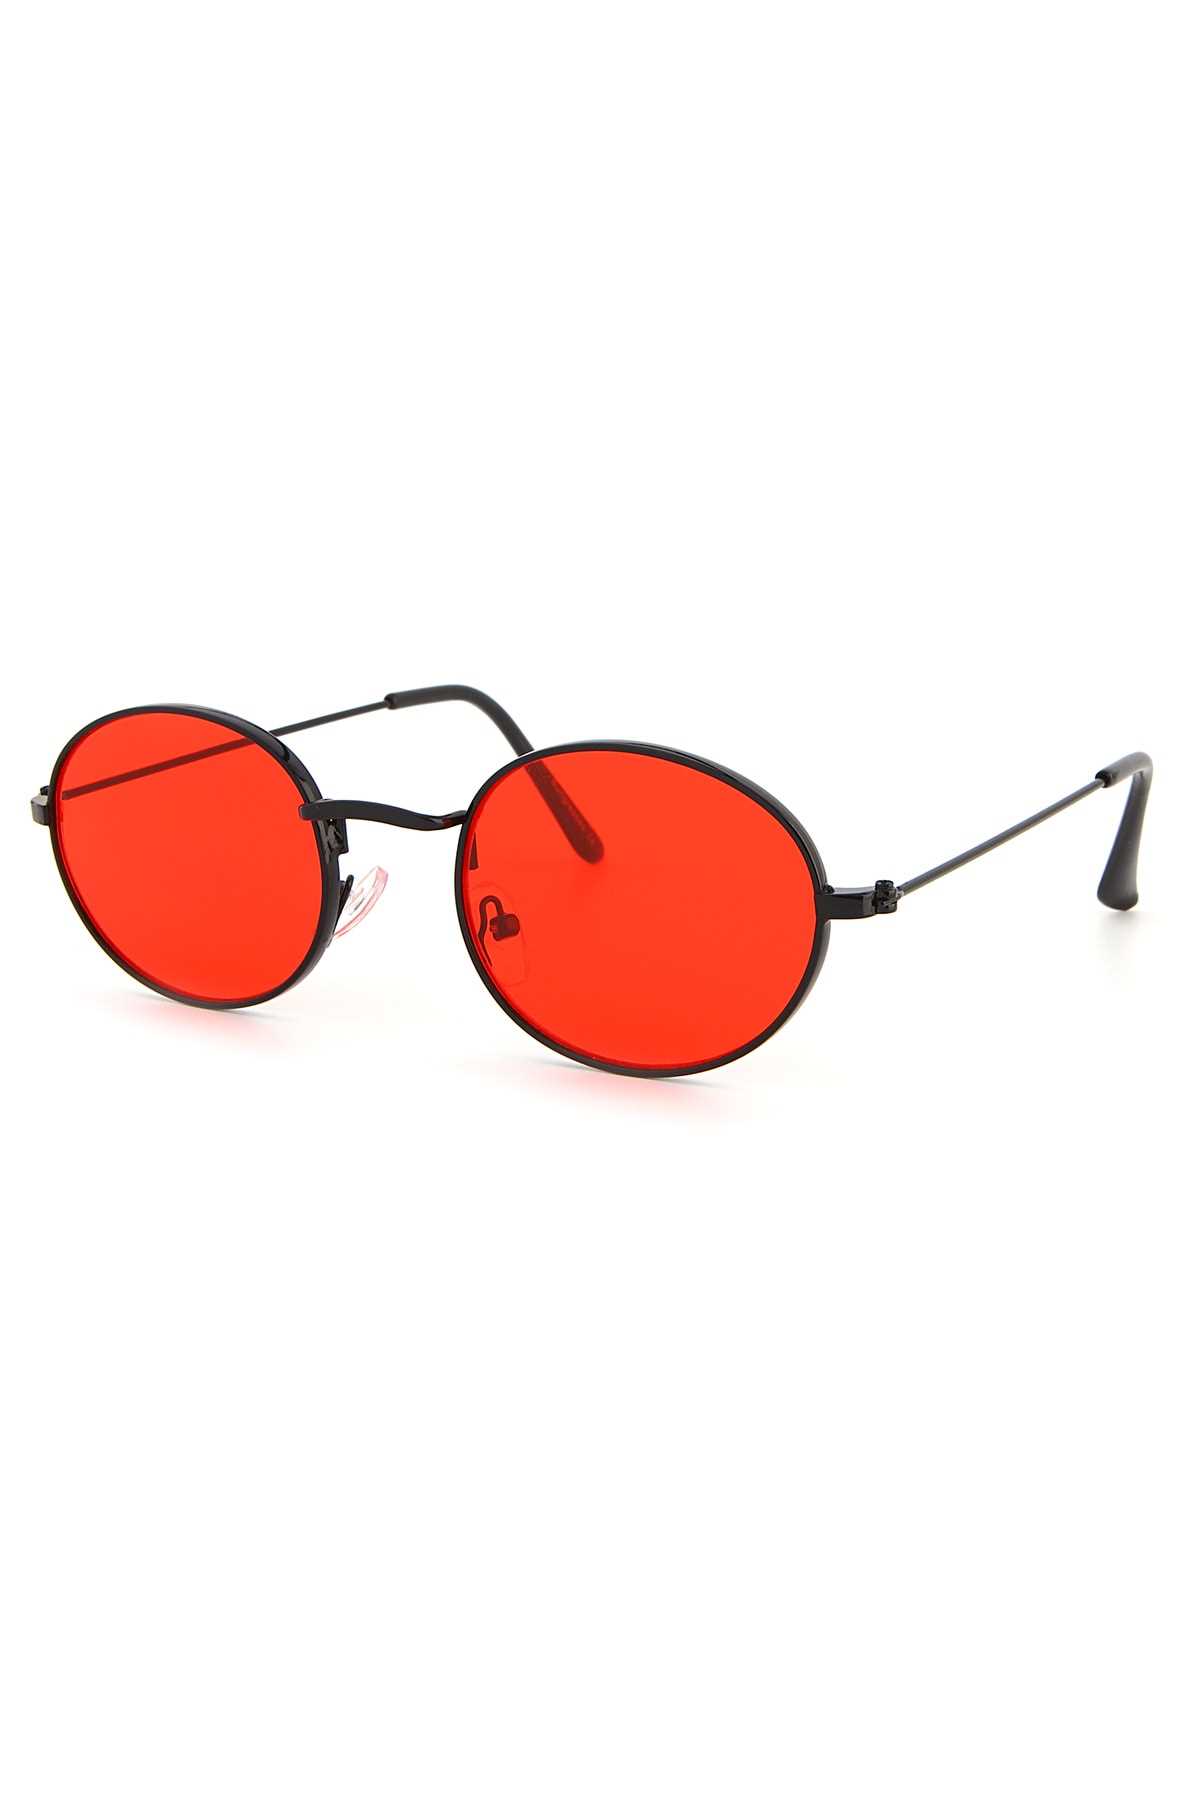 عینک آفتابی زنانه مارک مارک Aqua Di Polo 1987 رنگ قرمز ty91551694